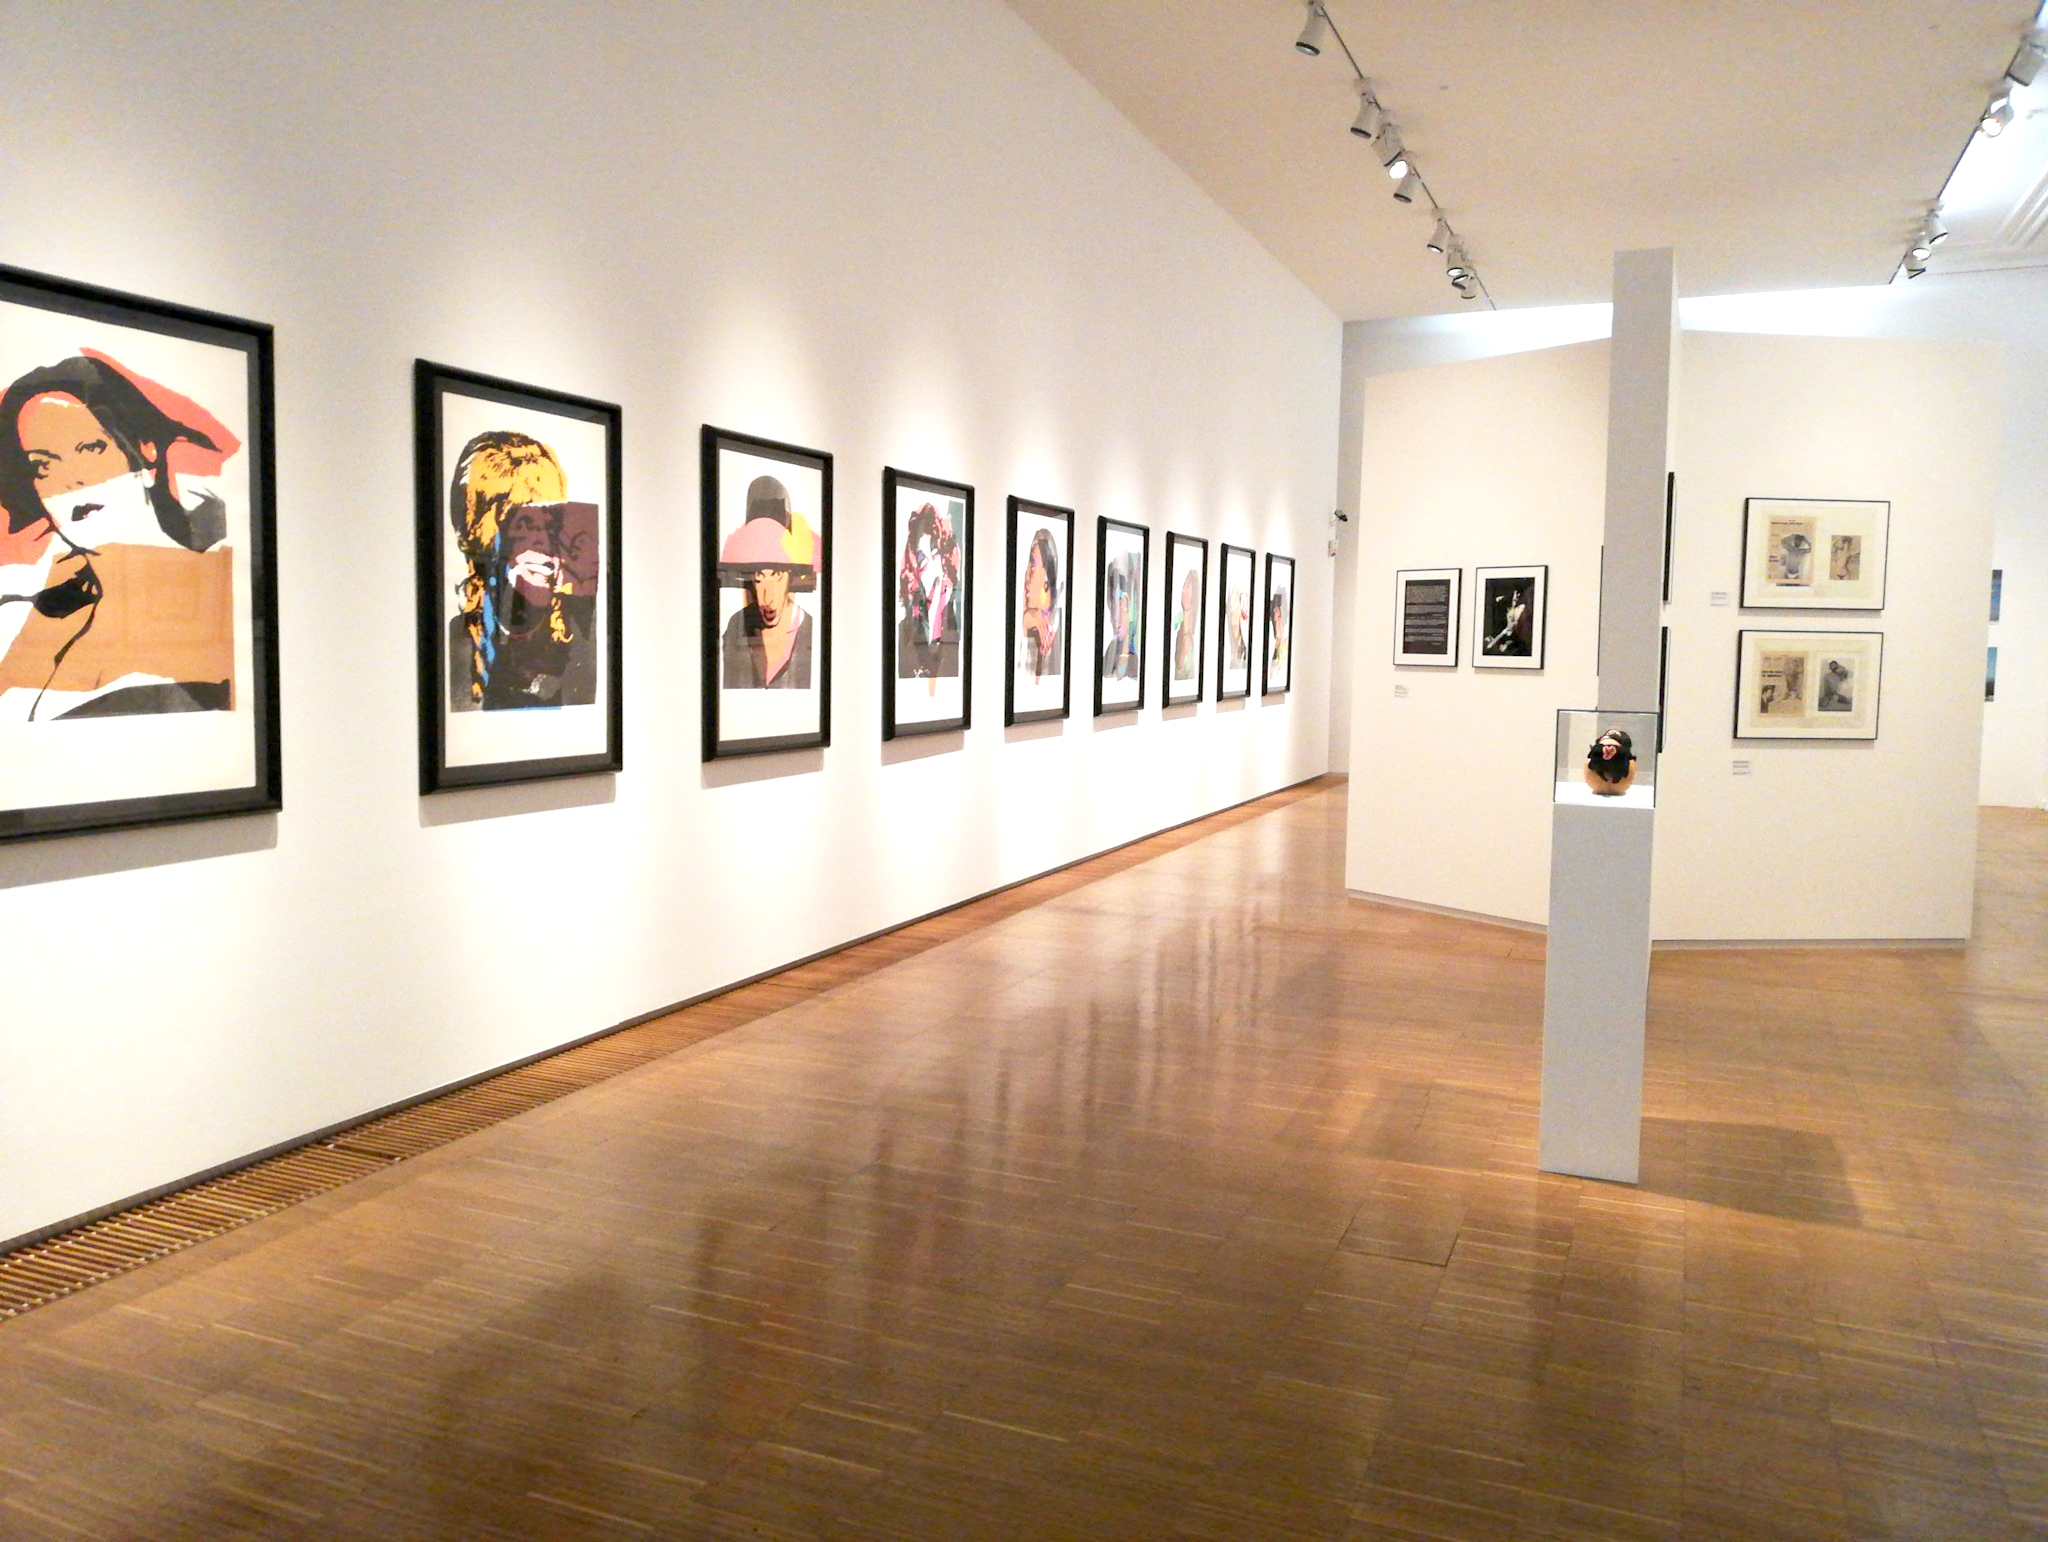 Foto eines Ausstellungraums in der Neuen Galerie Graz mit vielen zeitgenössischen Porträts an der Wand hängend.